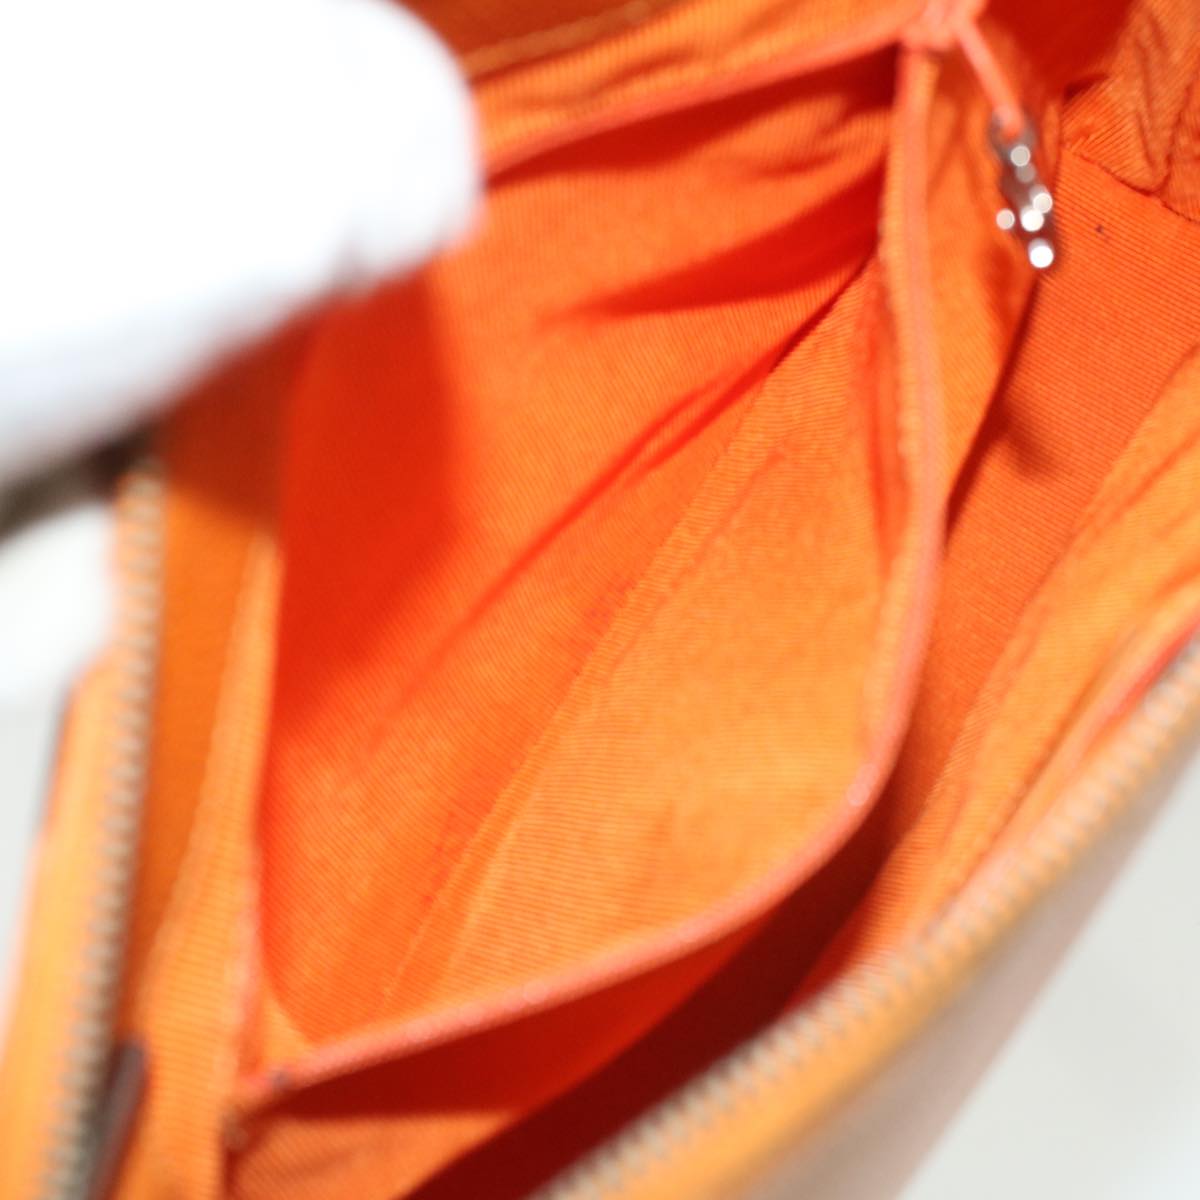 CHANEL Chain Shoulder Bag Caviar Skin Orange CC Auth ar8526